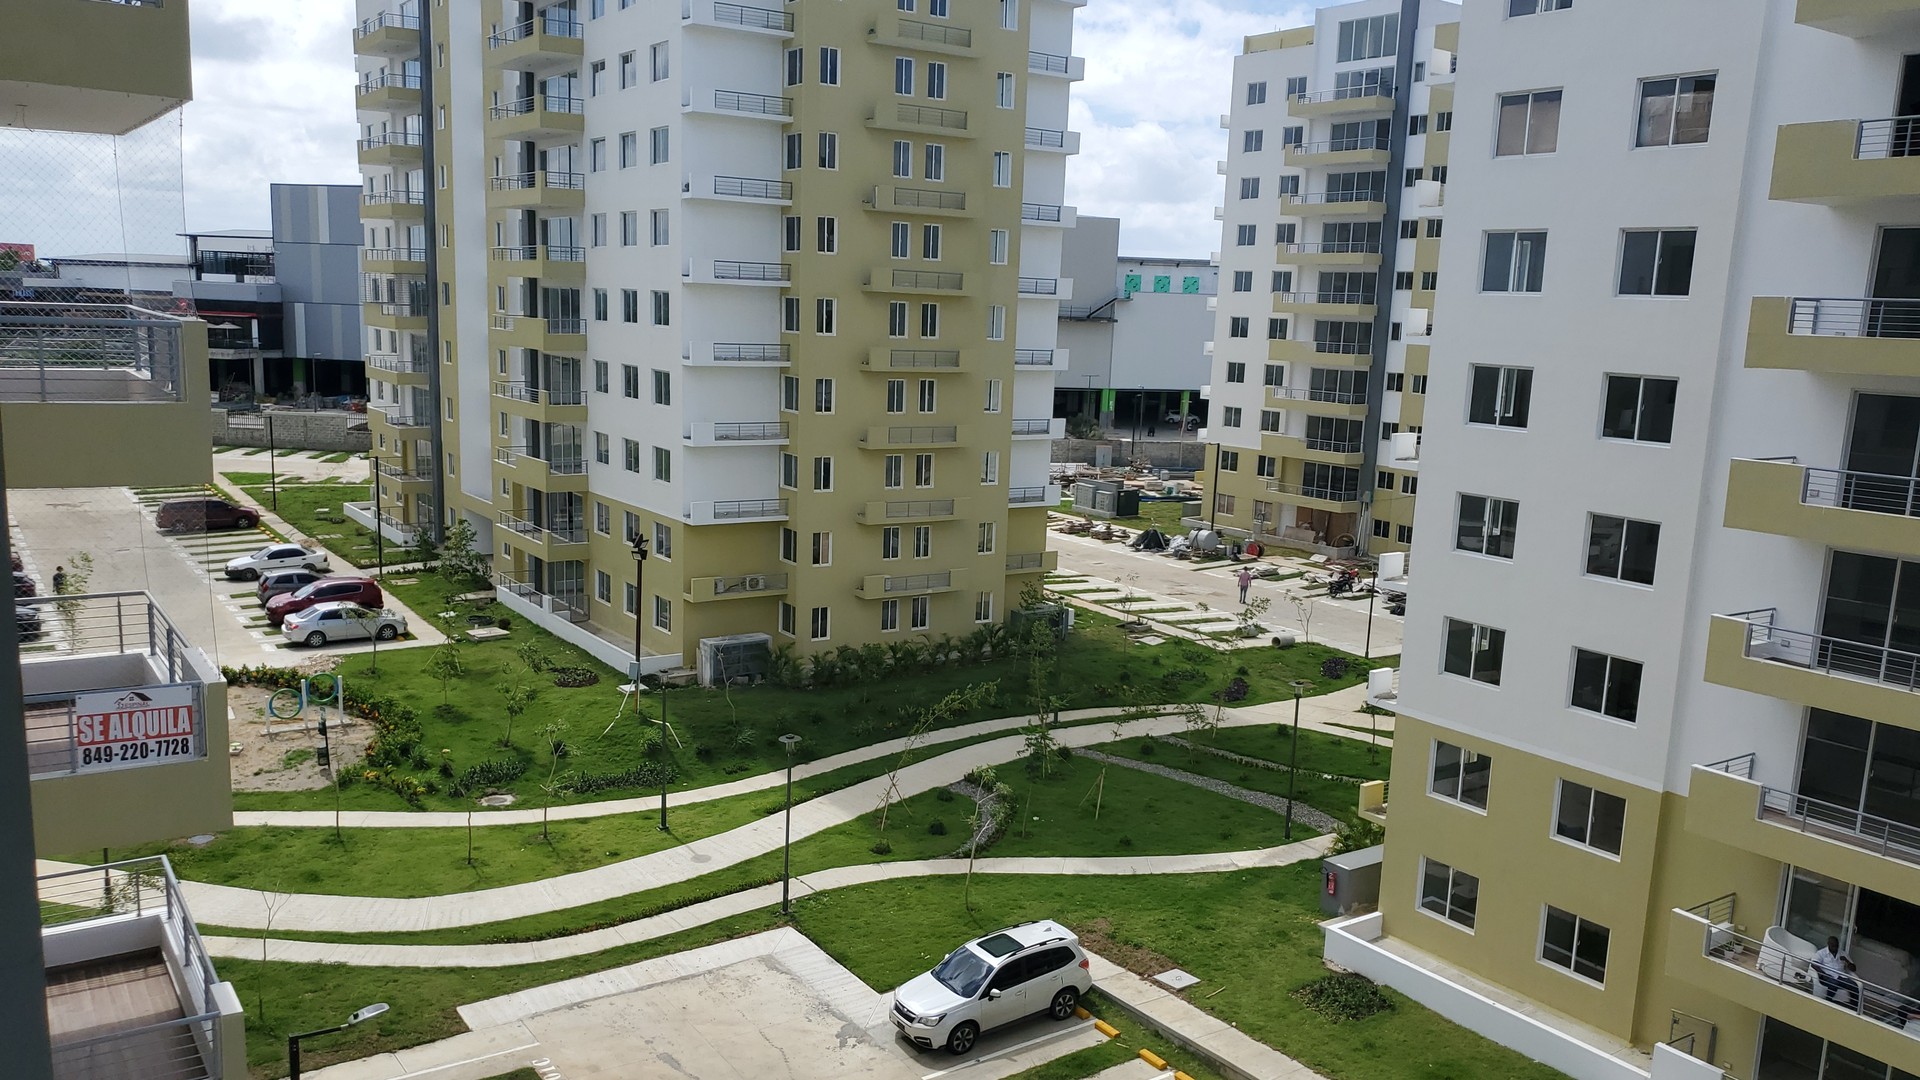 apartamentos - Alquilo apto nuevo con piscina, 2 hab, 2.5 baños en la jacobo Santo Domingo Nort